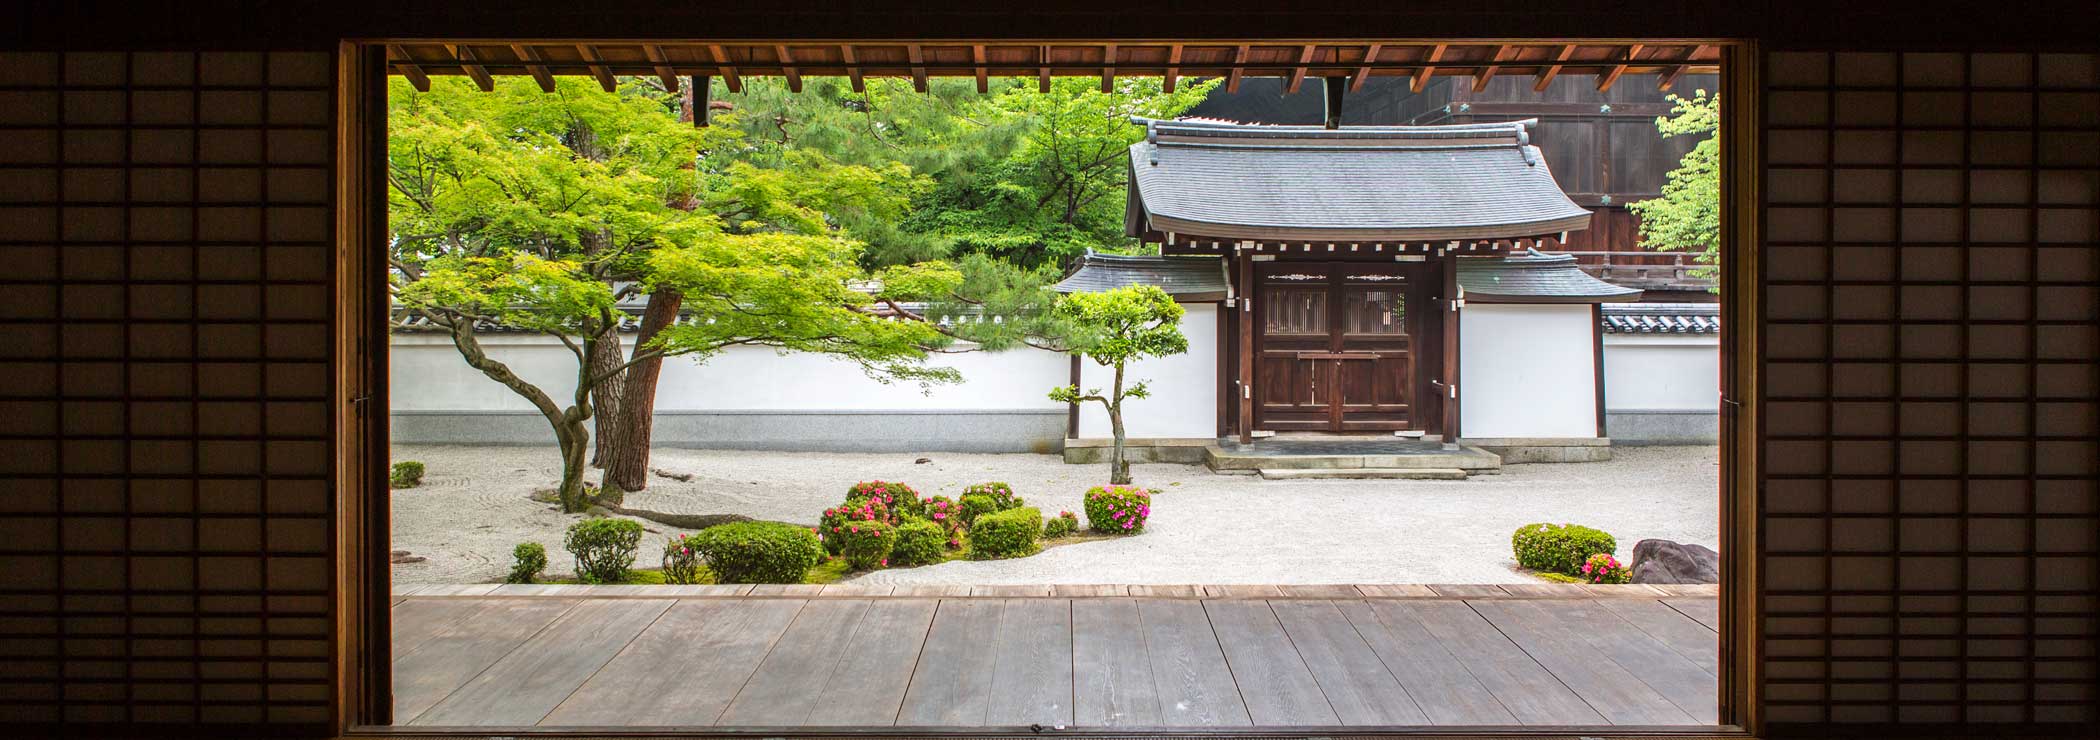 Zen garden seen through a temple door